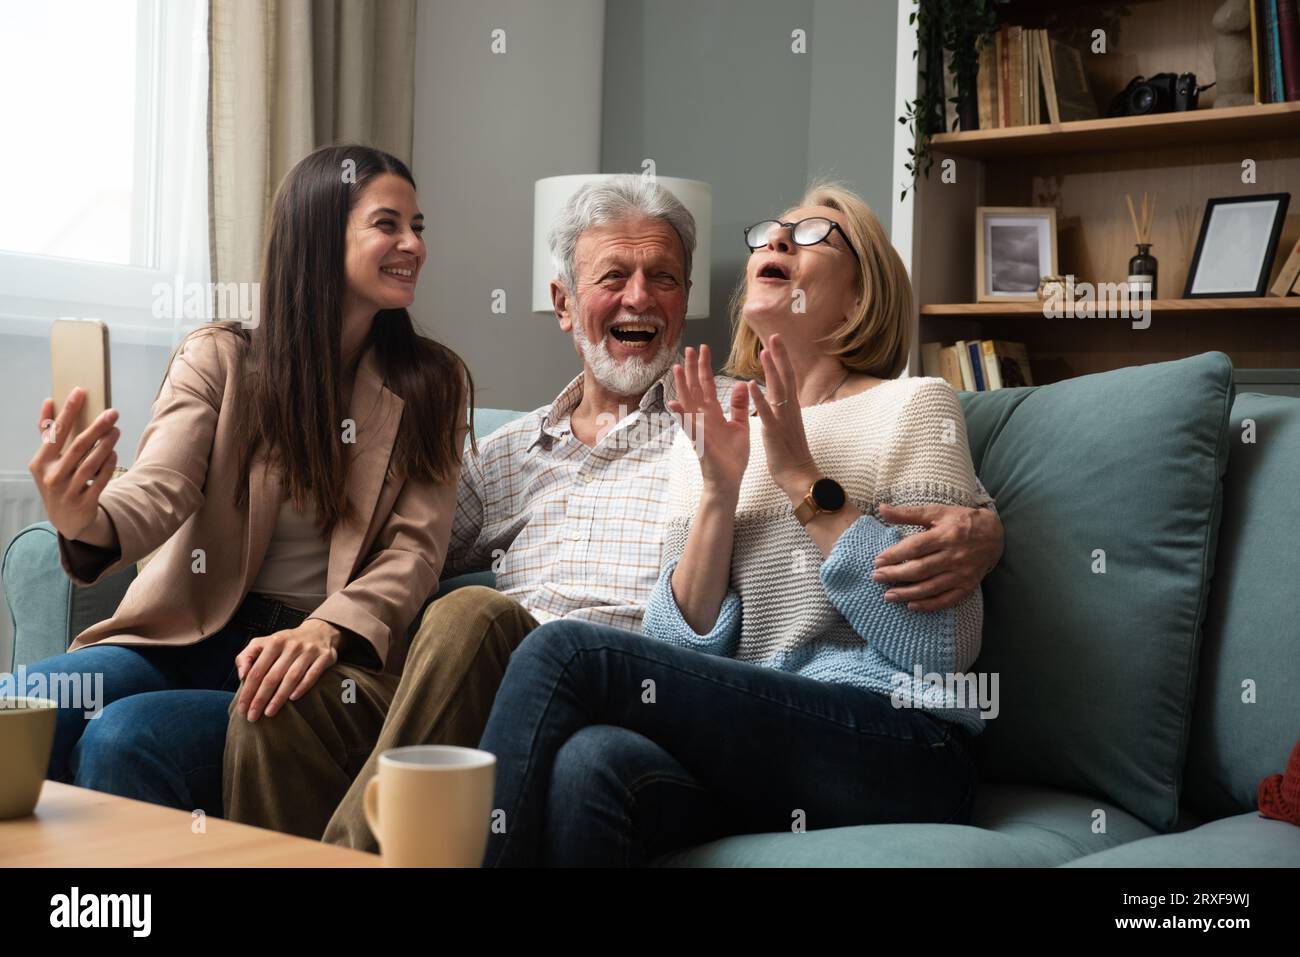 Die Tochter oder Enkelin, die ihre Eltern besucht, ein älteres Paar oder Großeltern macht ein Foto von ihnen mit ihrem Handy und nimmt ein Selfie als Erinnerung auf Stockfoto